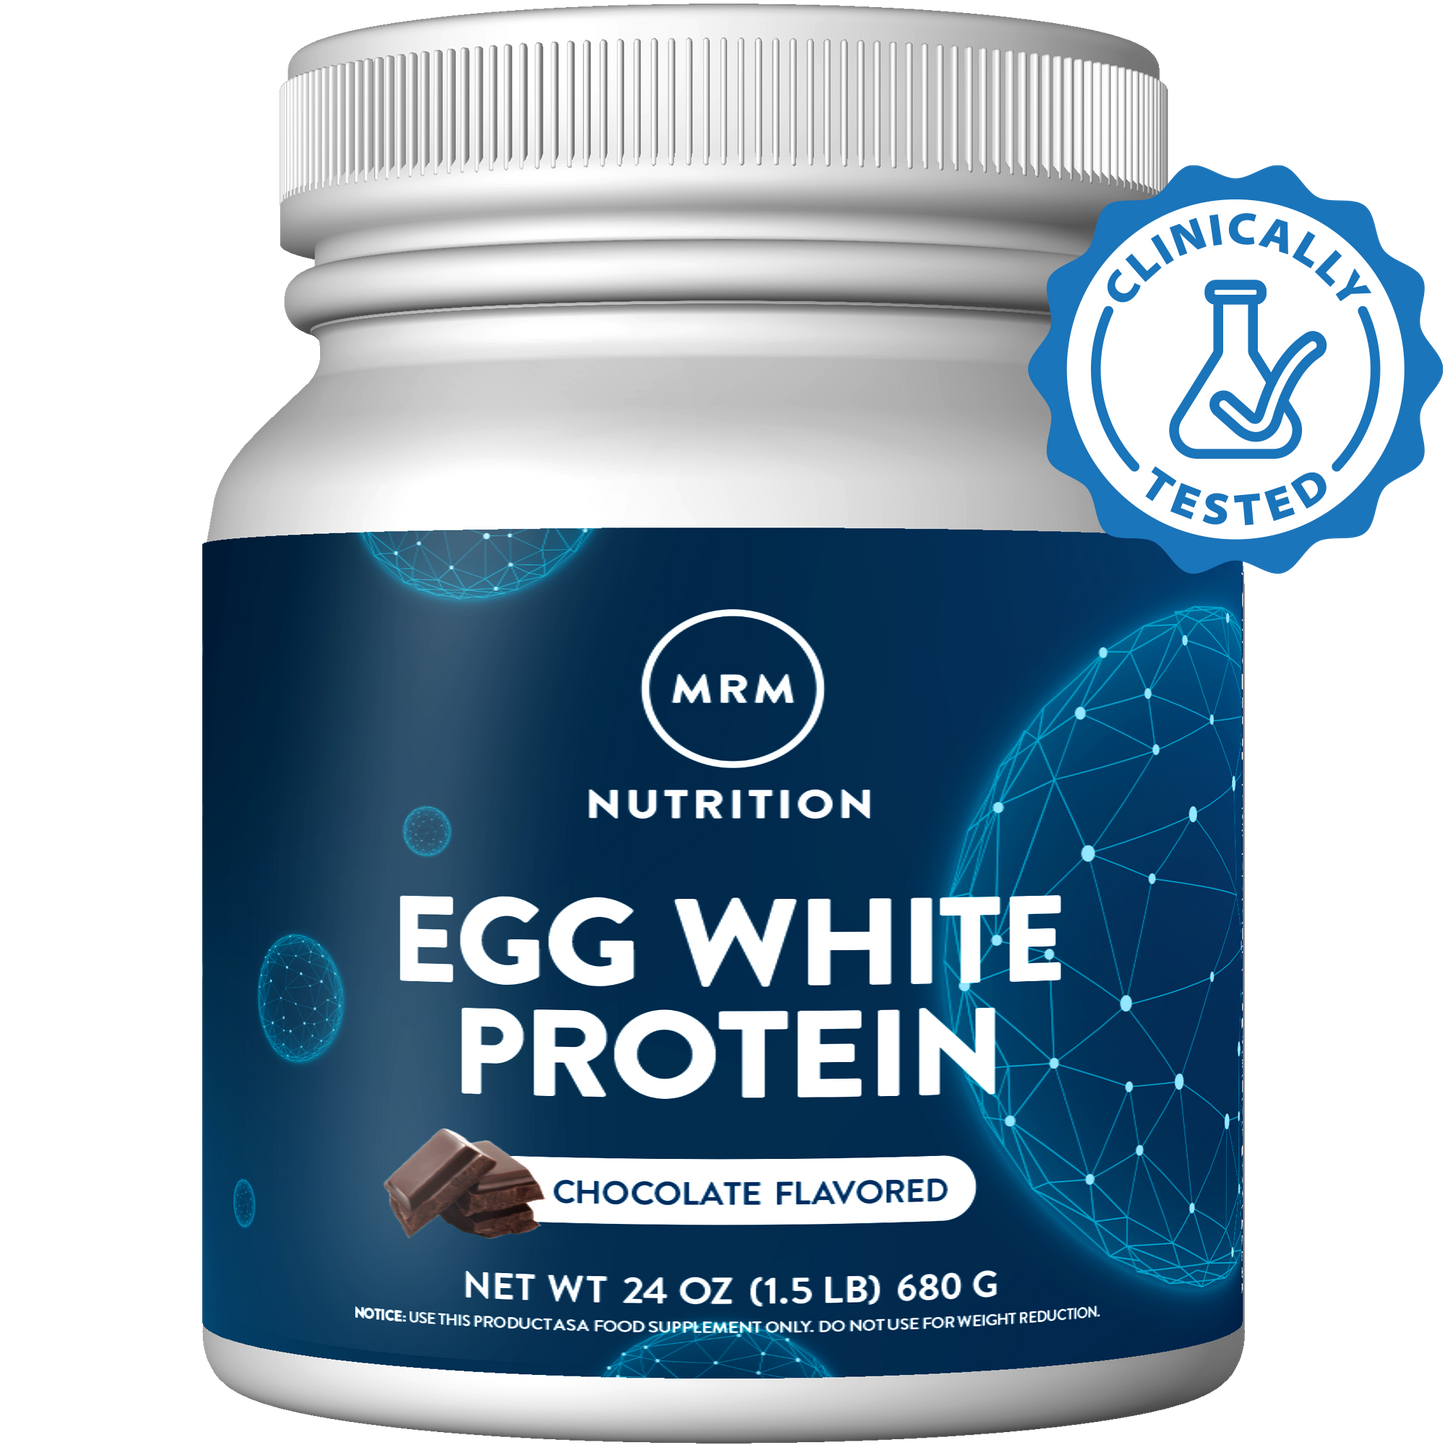 Egg White Protein Vanilla Flavored (24oz)